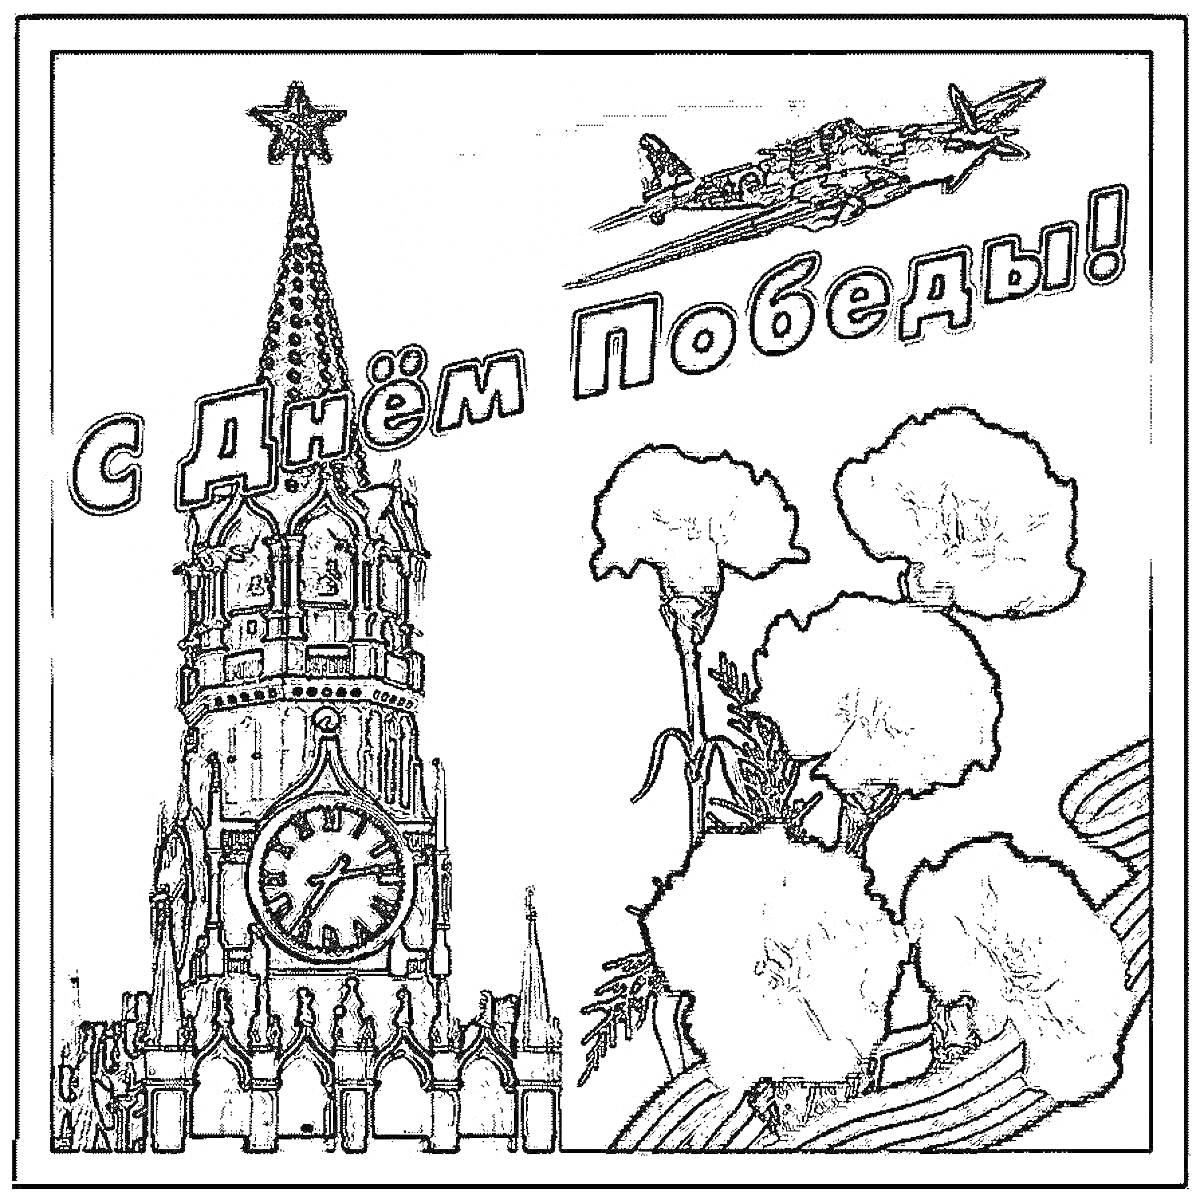 Спасская башня, гвоздики, самолёт и надпись 